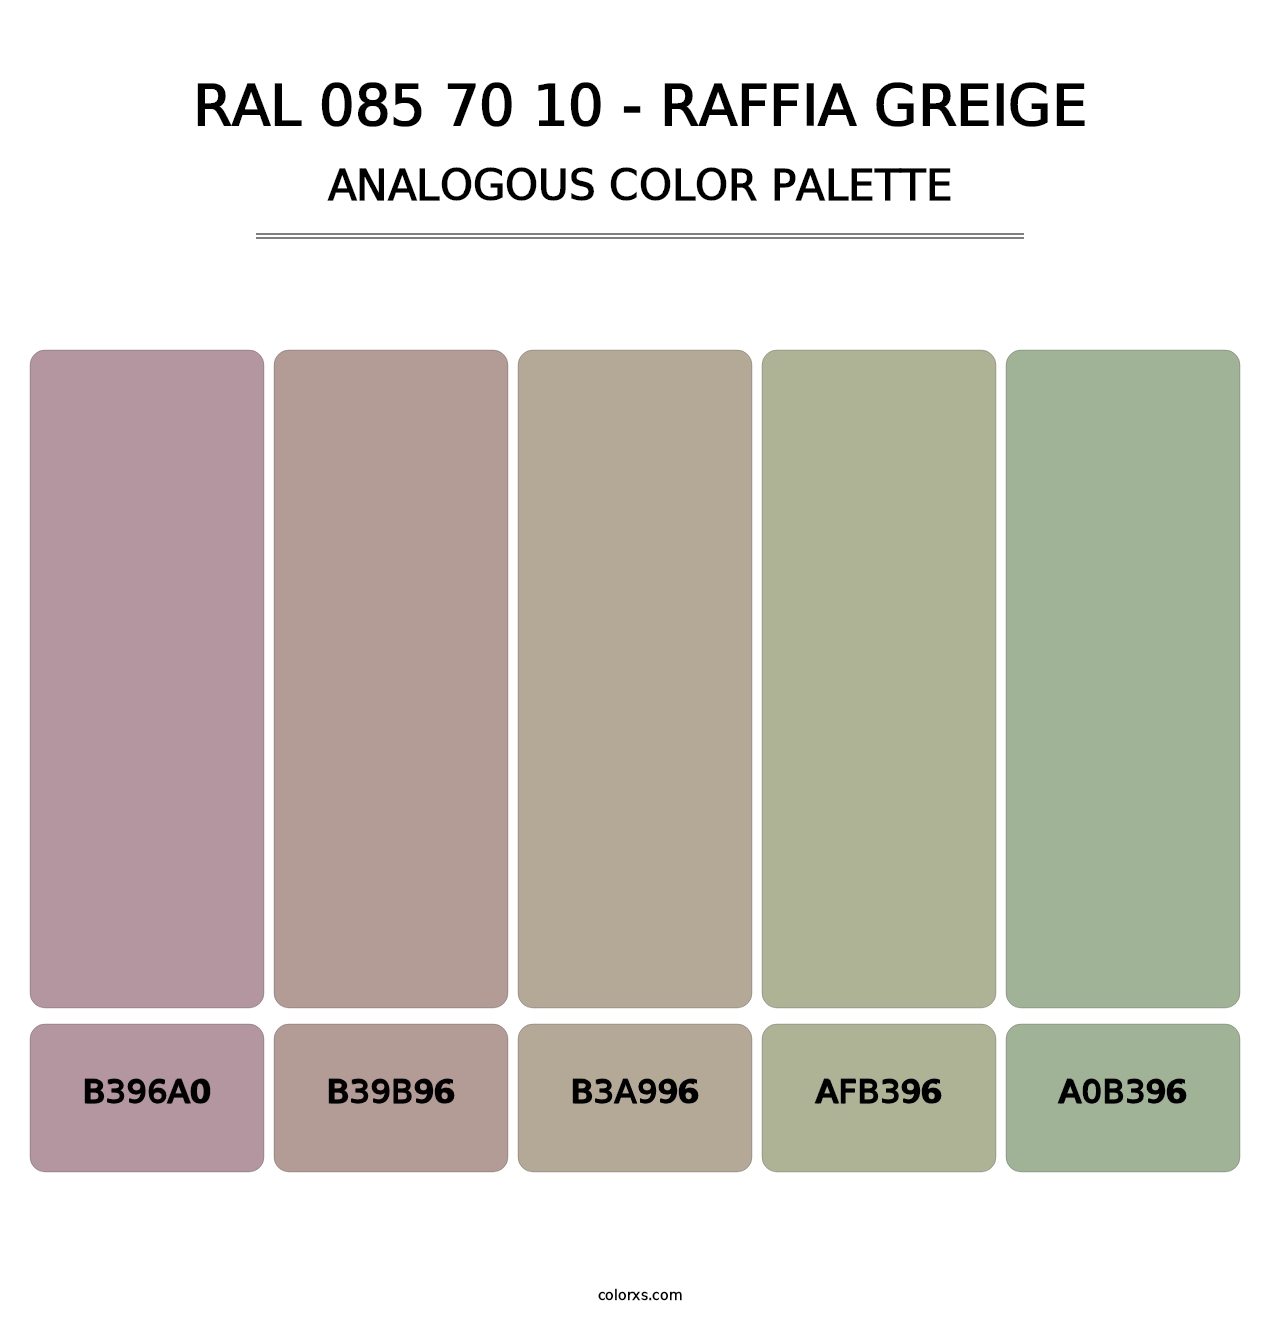 RAL 085 70 10 - Raffia Greige - Analogous Color Palette